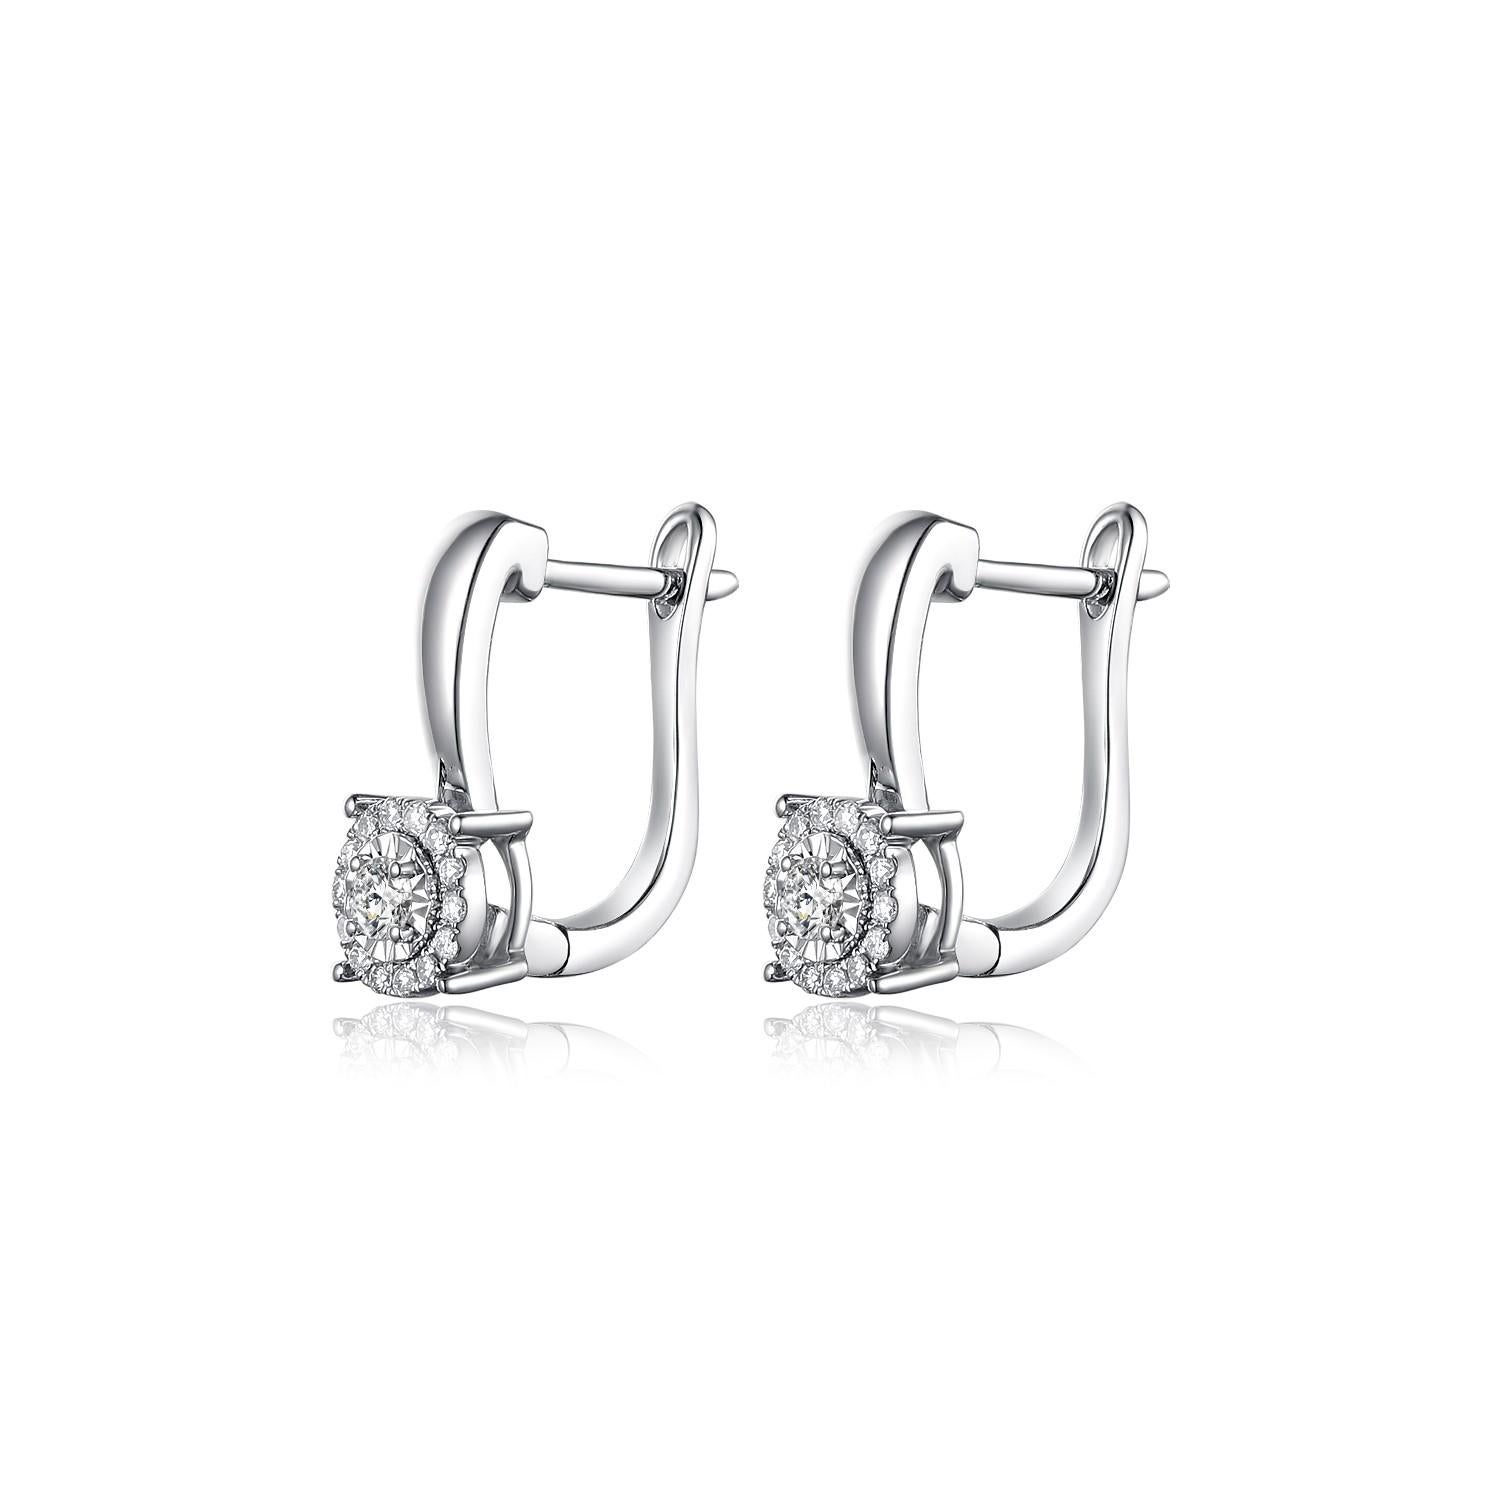 Diese Ohrringe sind mit zwei 0,05-Karat-Diamanten auf jeder Seite ausgestattet, der Mittelstein ist von einem Diamantenhalo umgeben. Die Ohrringe sind in 18 Karat Weißgold gefasst. Die Ohrringe sind sehr dezent und eignen sich hervorragend für den